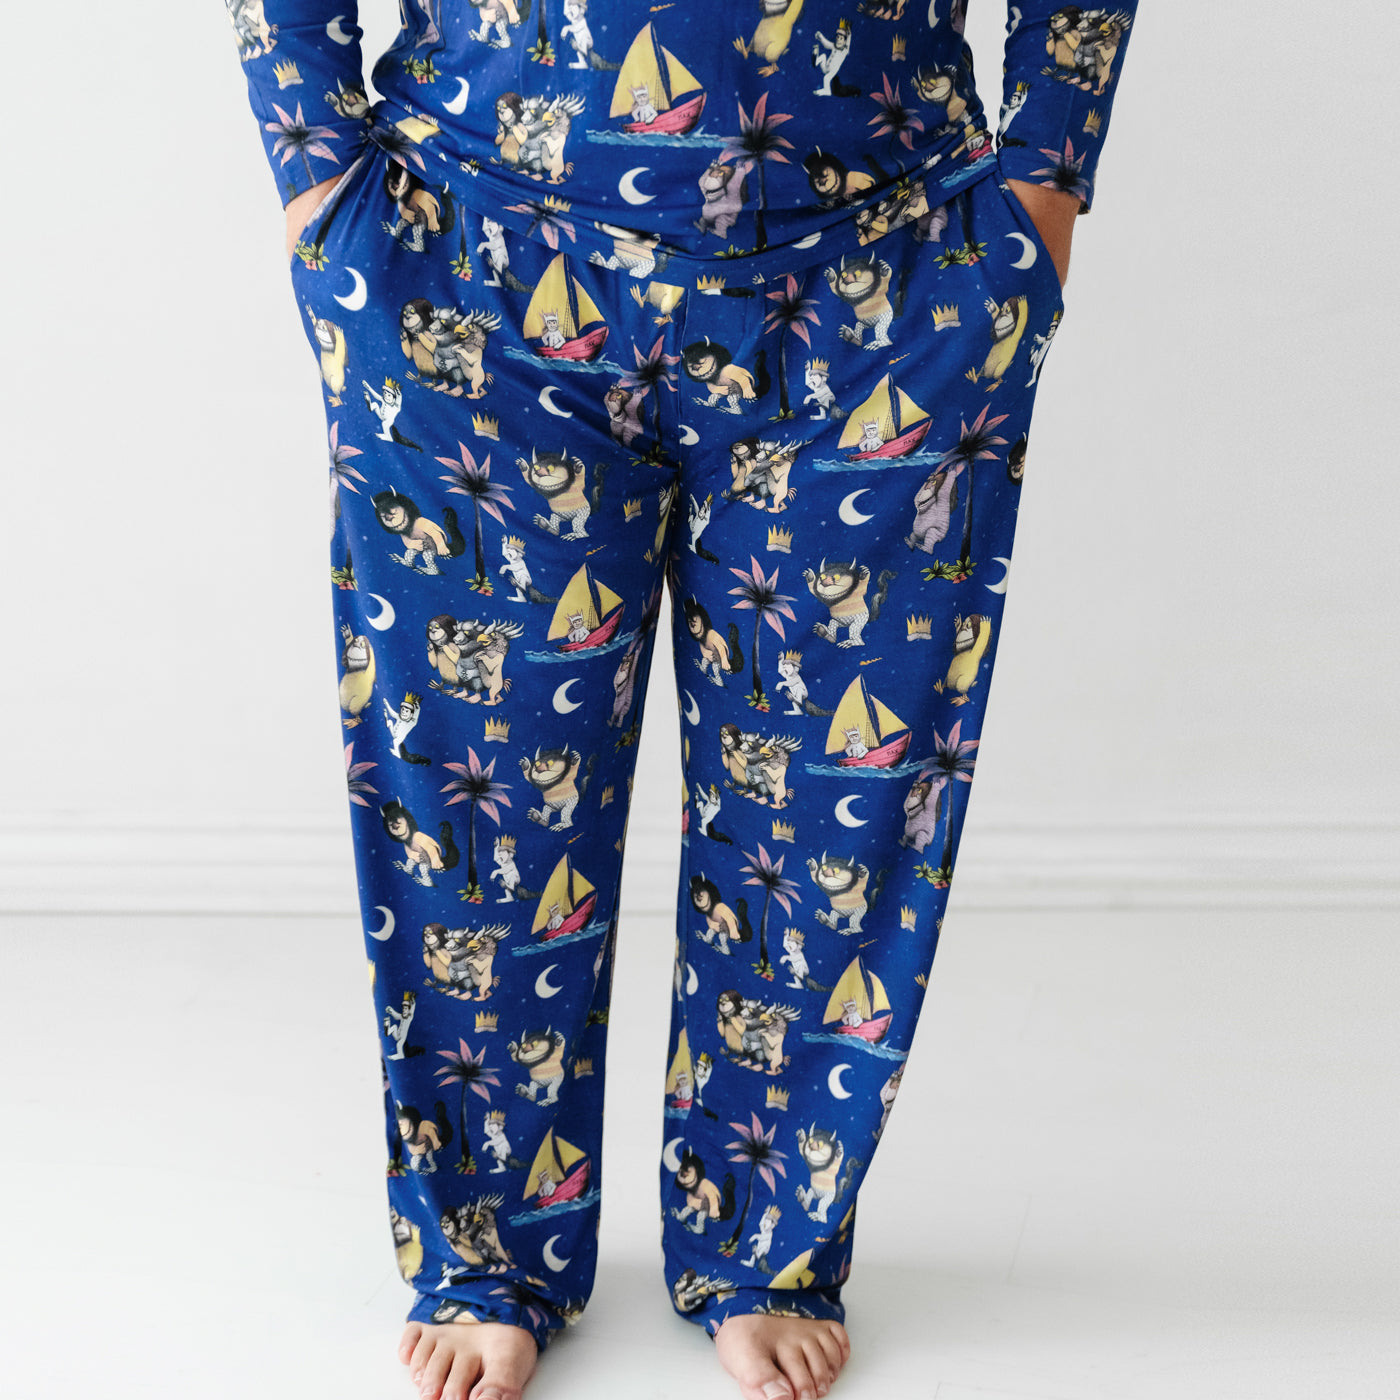 Mens PJ Pants - Pyjama Bottoms For Men